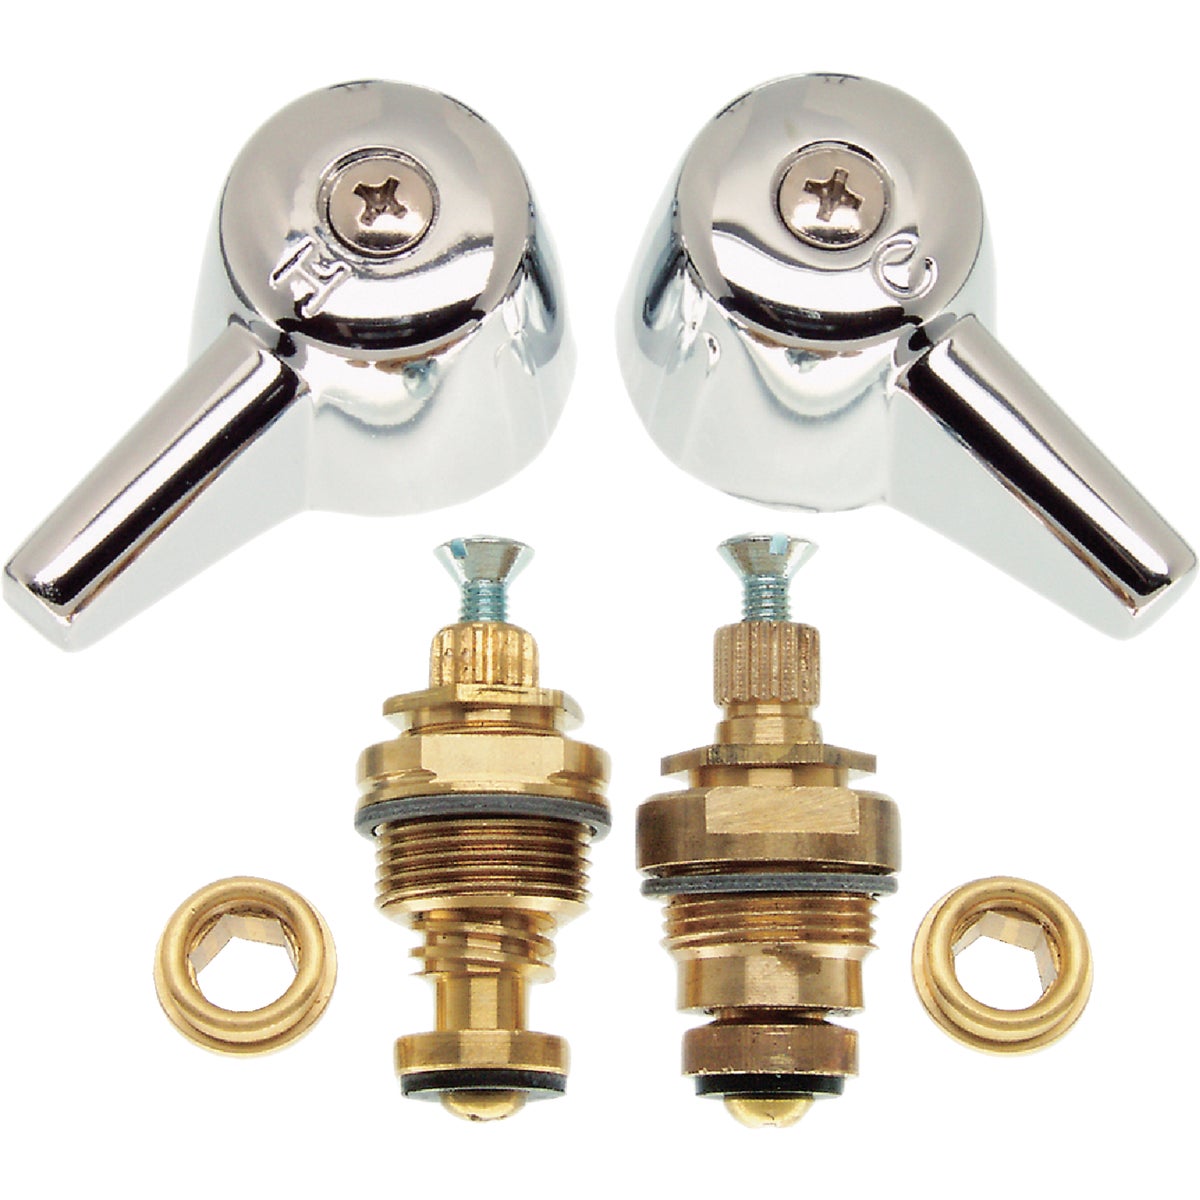 Danco 2K-2H Hot Stem & 2K-2C Cold Stem Brass Faucet Repair Kit